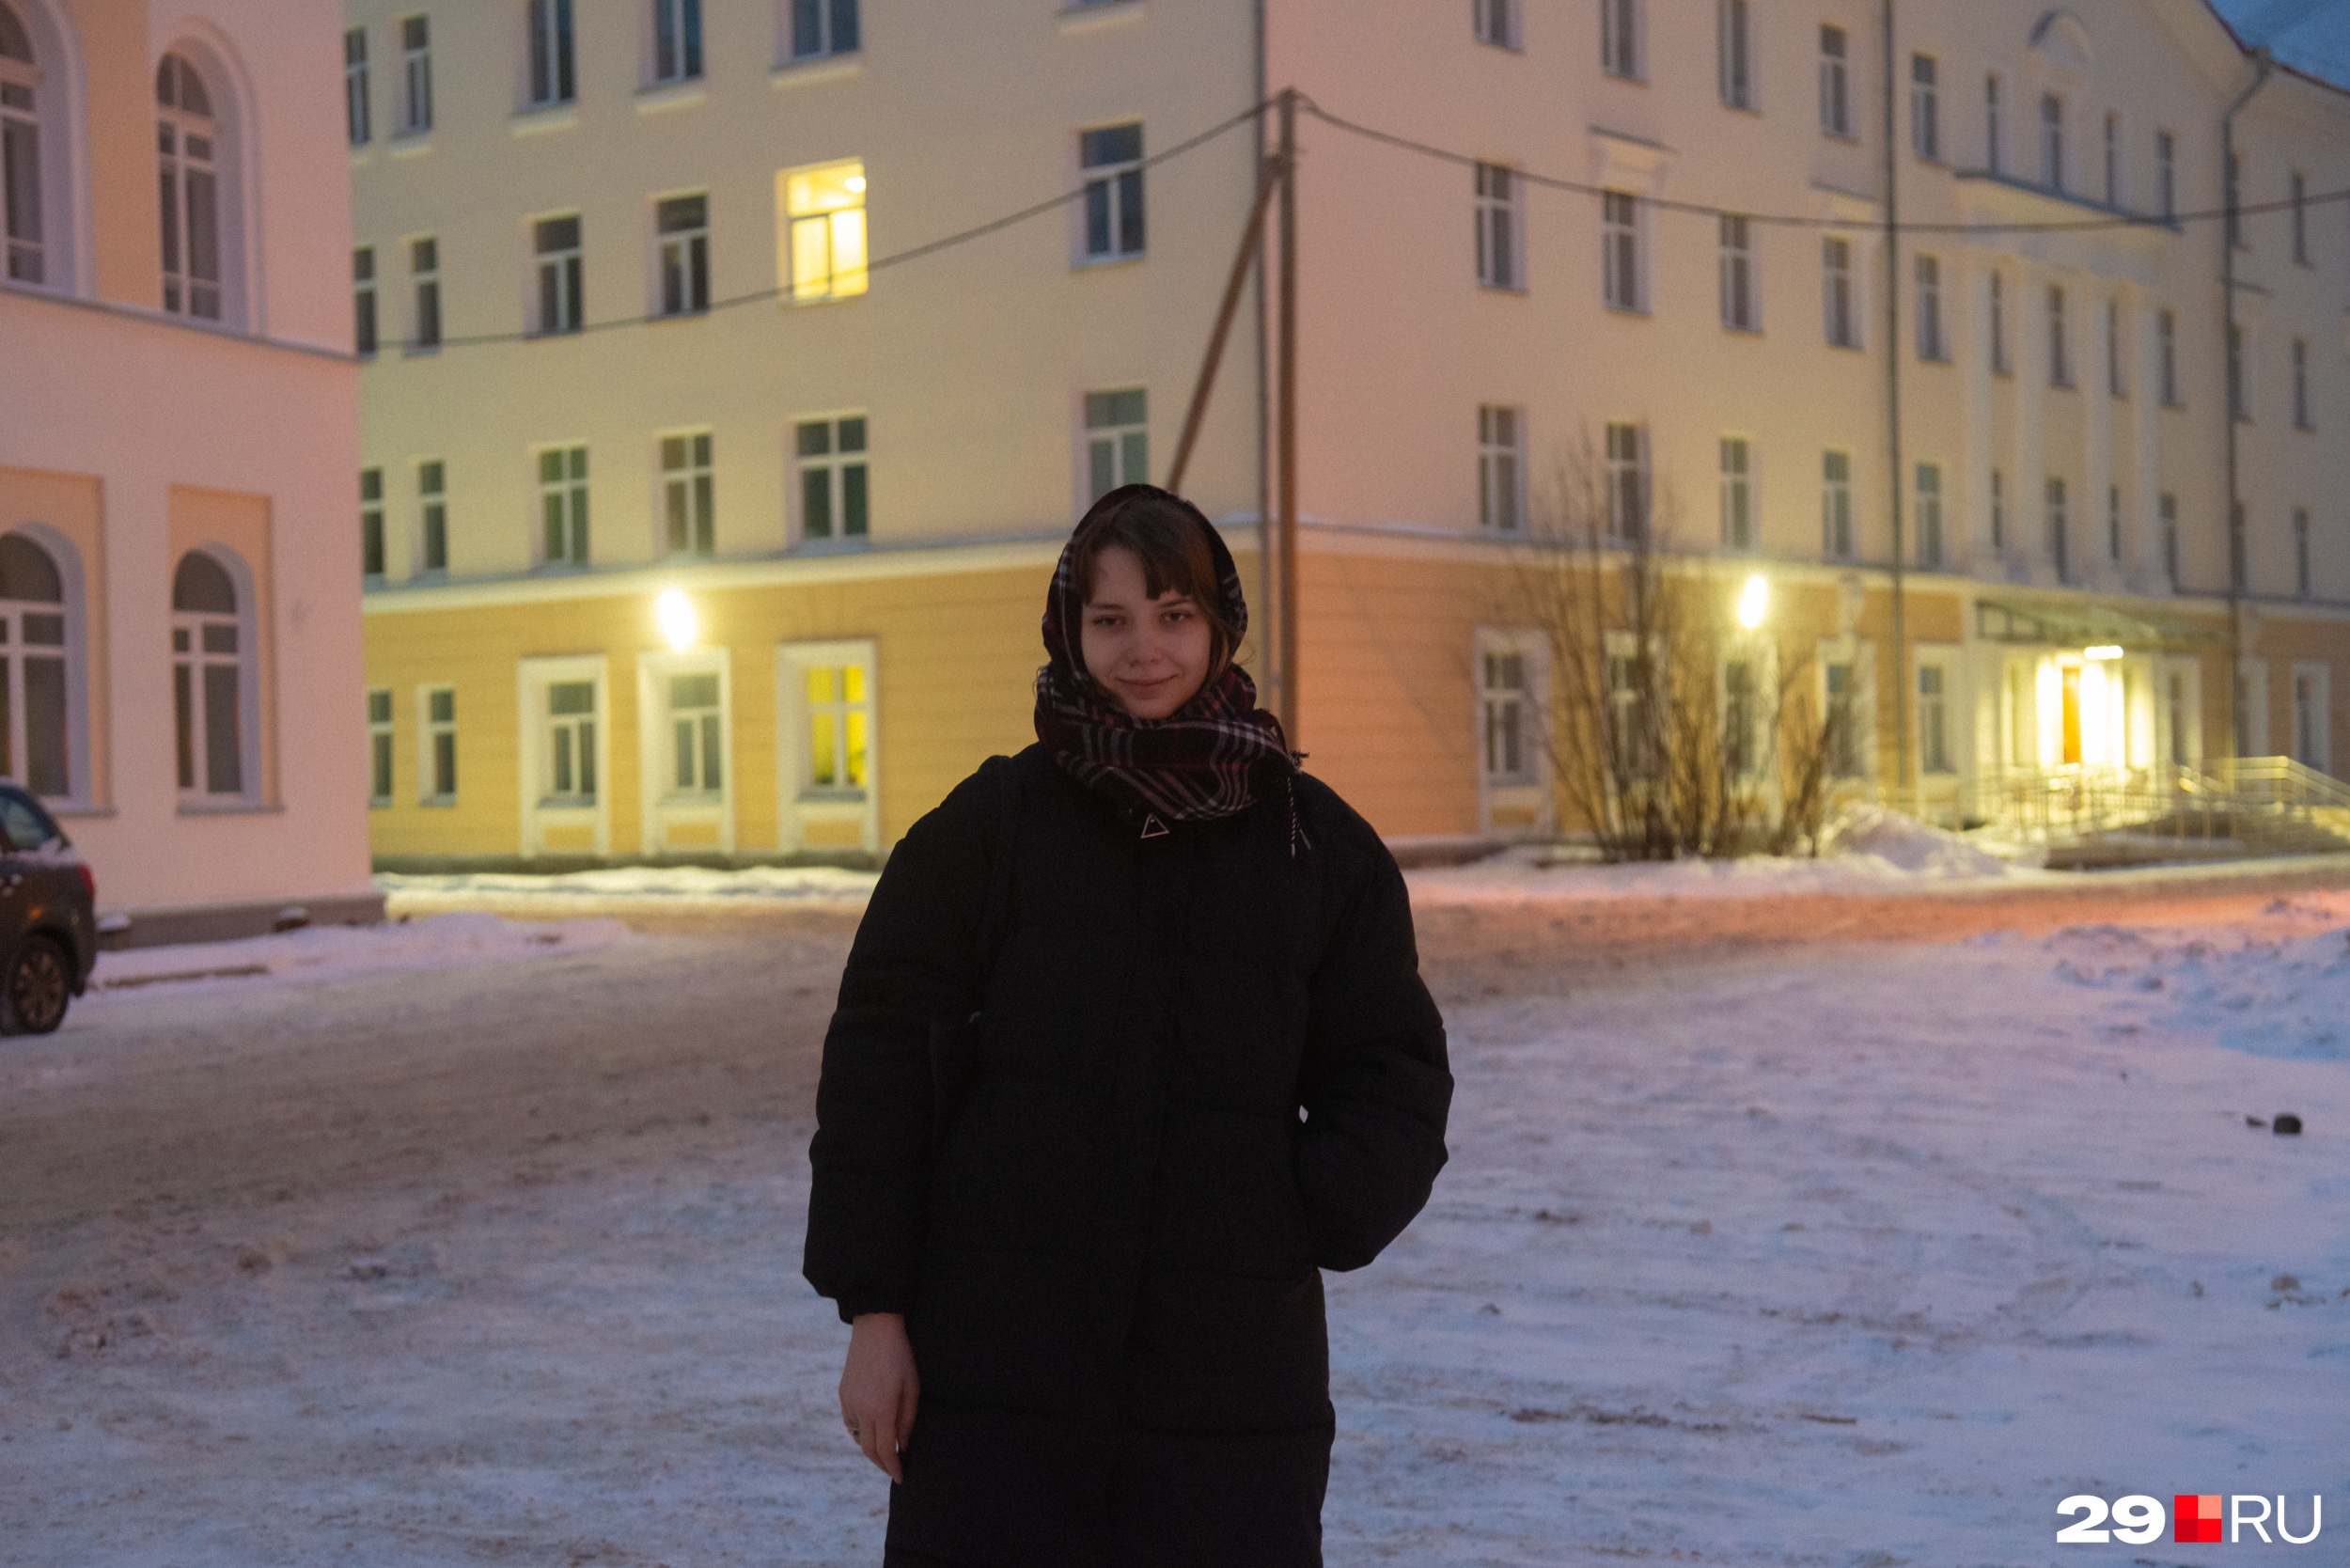 Олеся на фоне корпуса университета, где проходила ее учеба